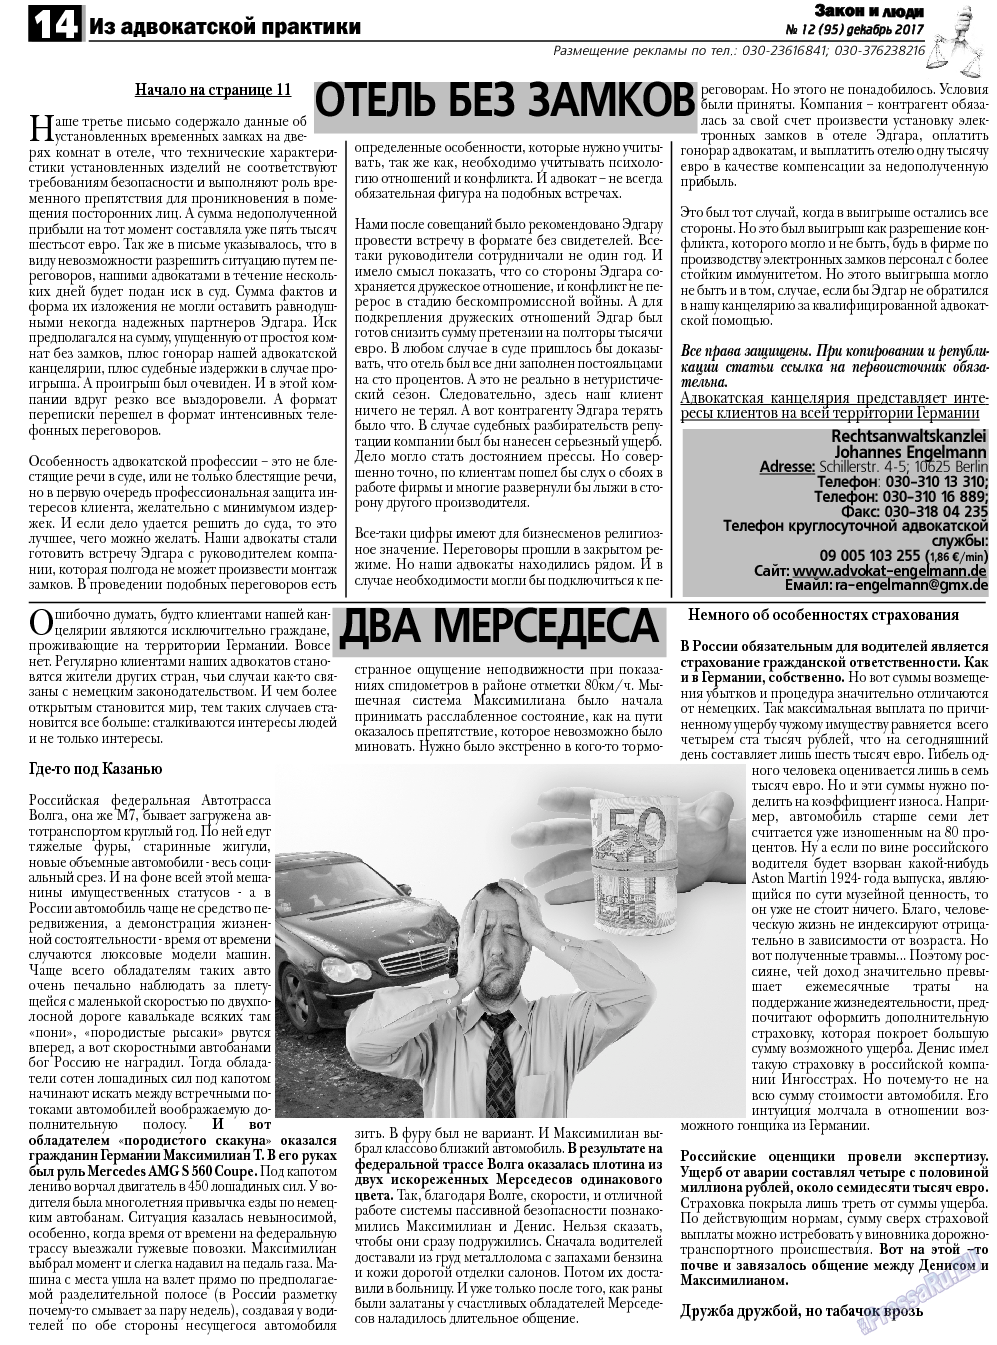 Закон и люди, газета. 2017 №12 стр.14